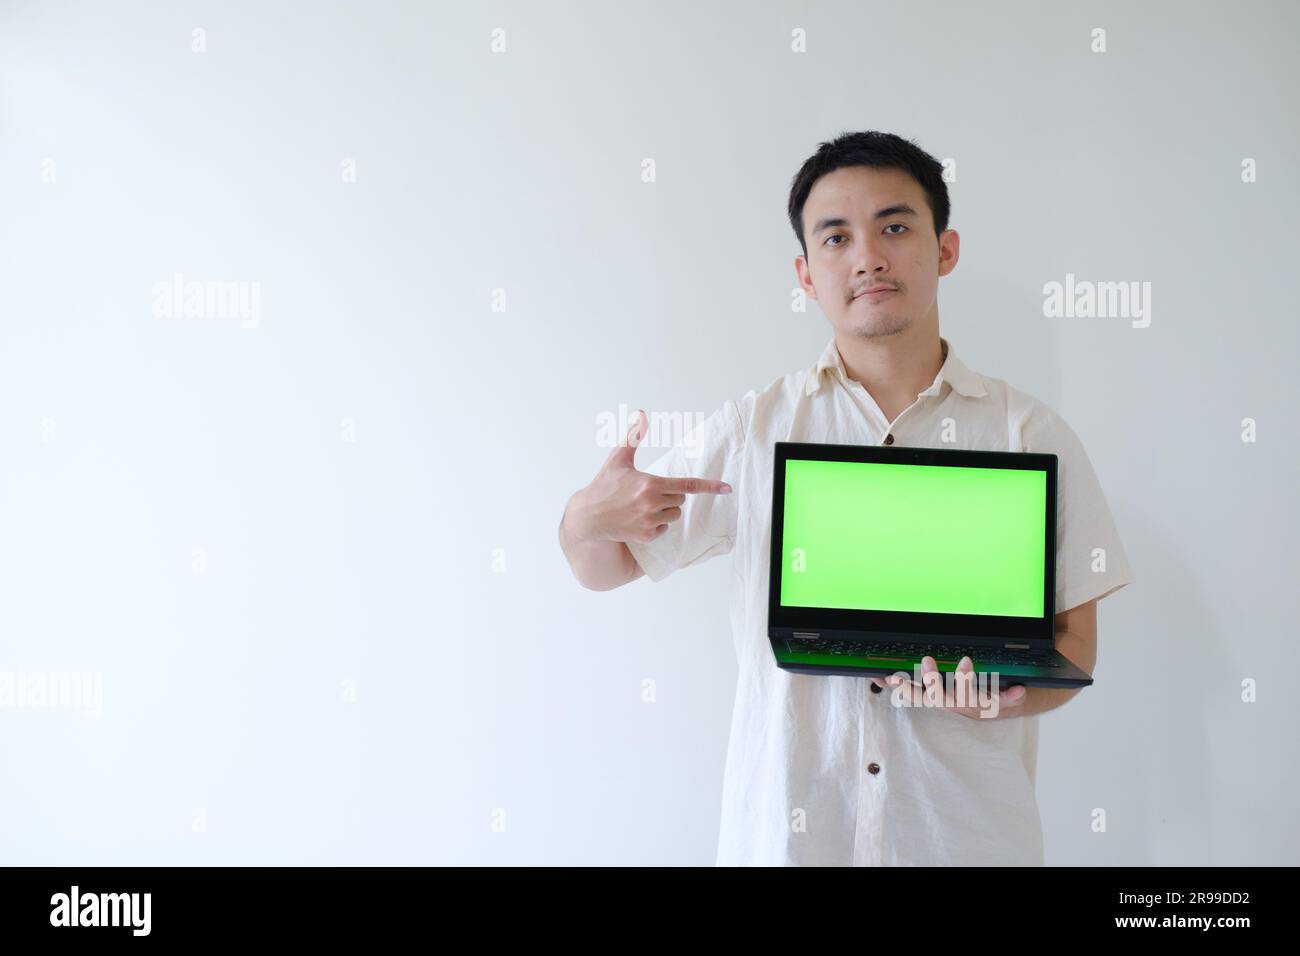 Ein asiatischer Mann, der ein graues Hemd trägt, zeigt mit seiner rechten Hand auf einen Laptop mit einem grünen Bildschirm in der linken Hand. Ich zeige es der Kamera. Stockfoto